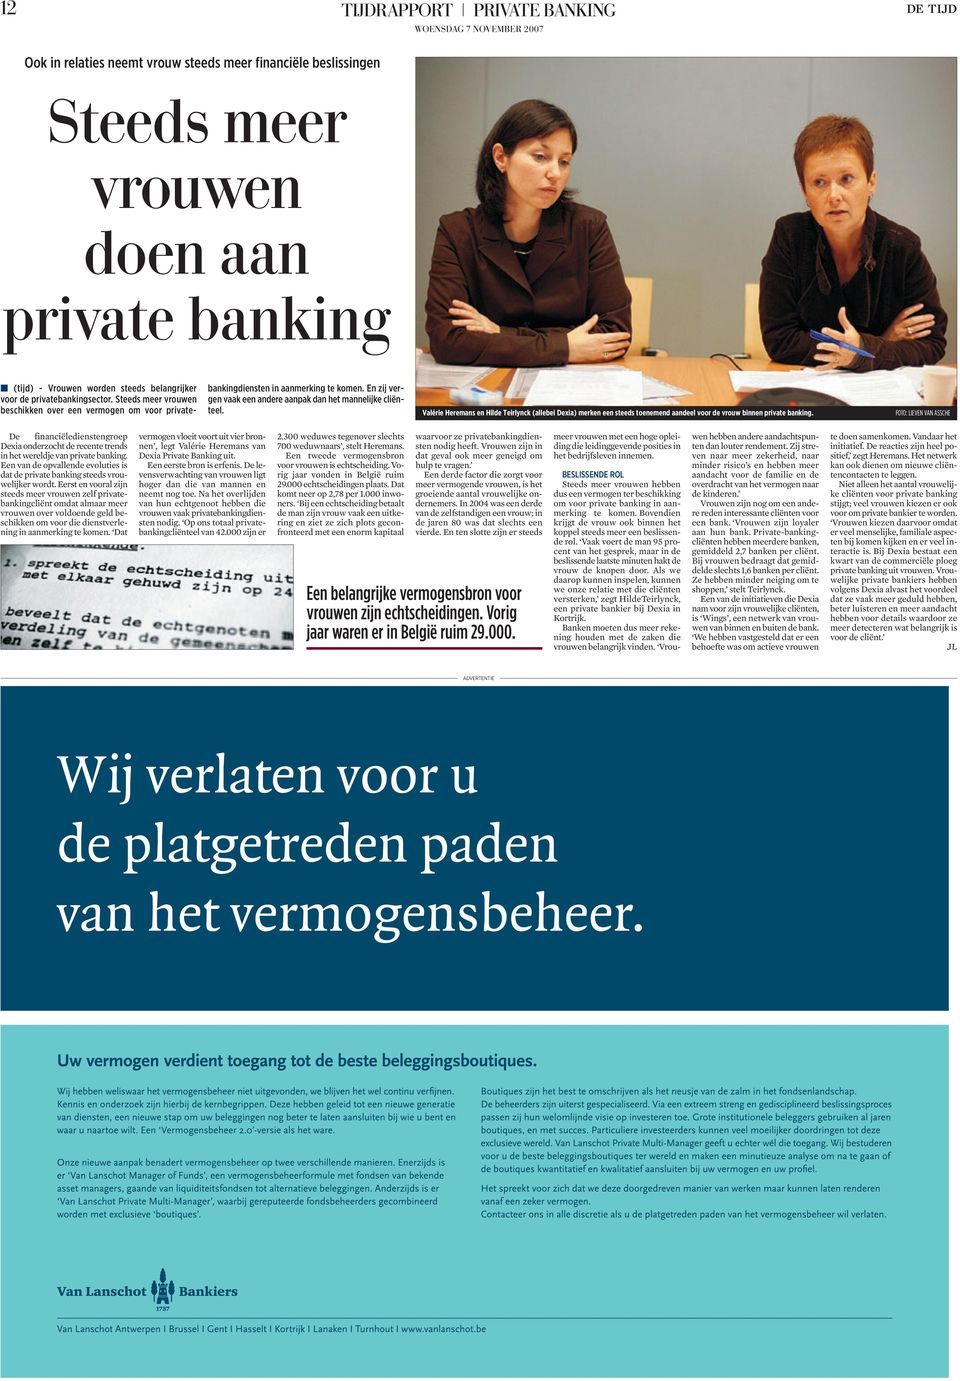 Valérie Heremans en Hilde Teirlynck (allebei Dexia) merken een steeds toenemend aandeel voor de vrouw binnen private banking.